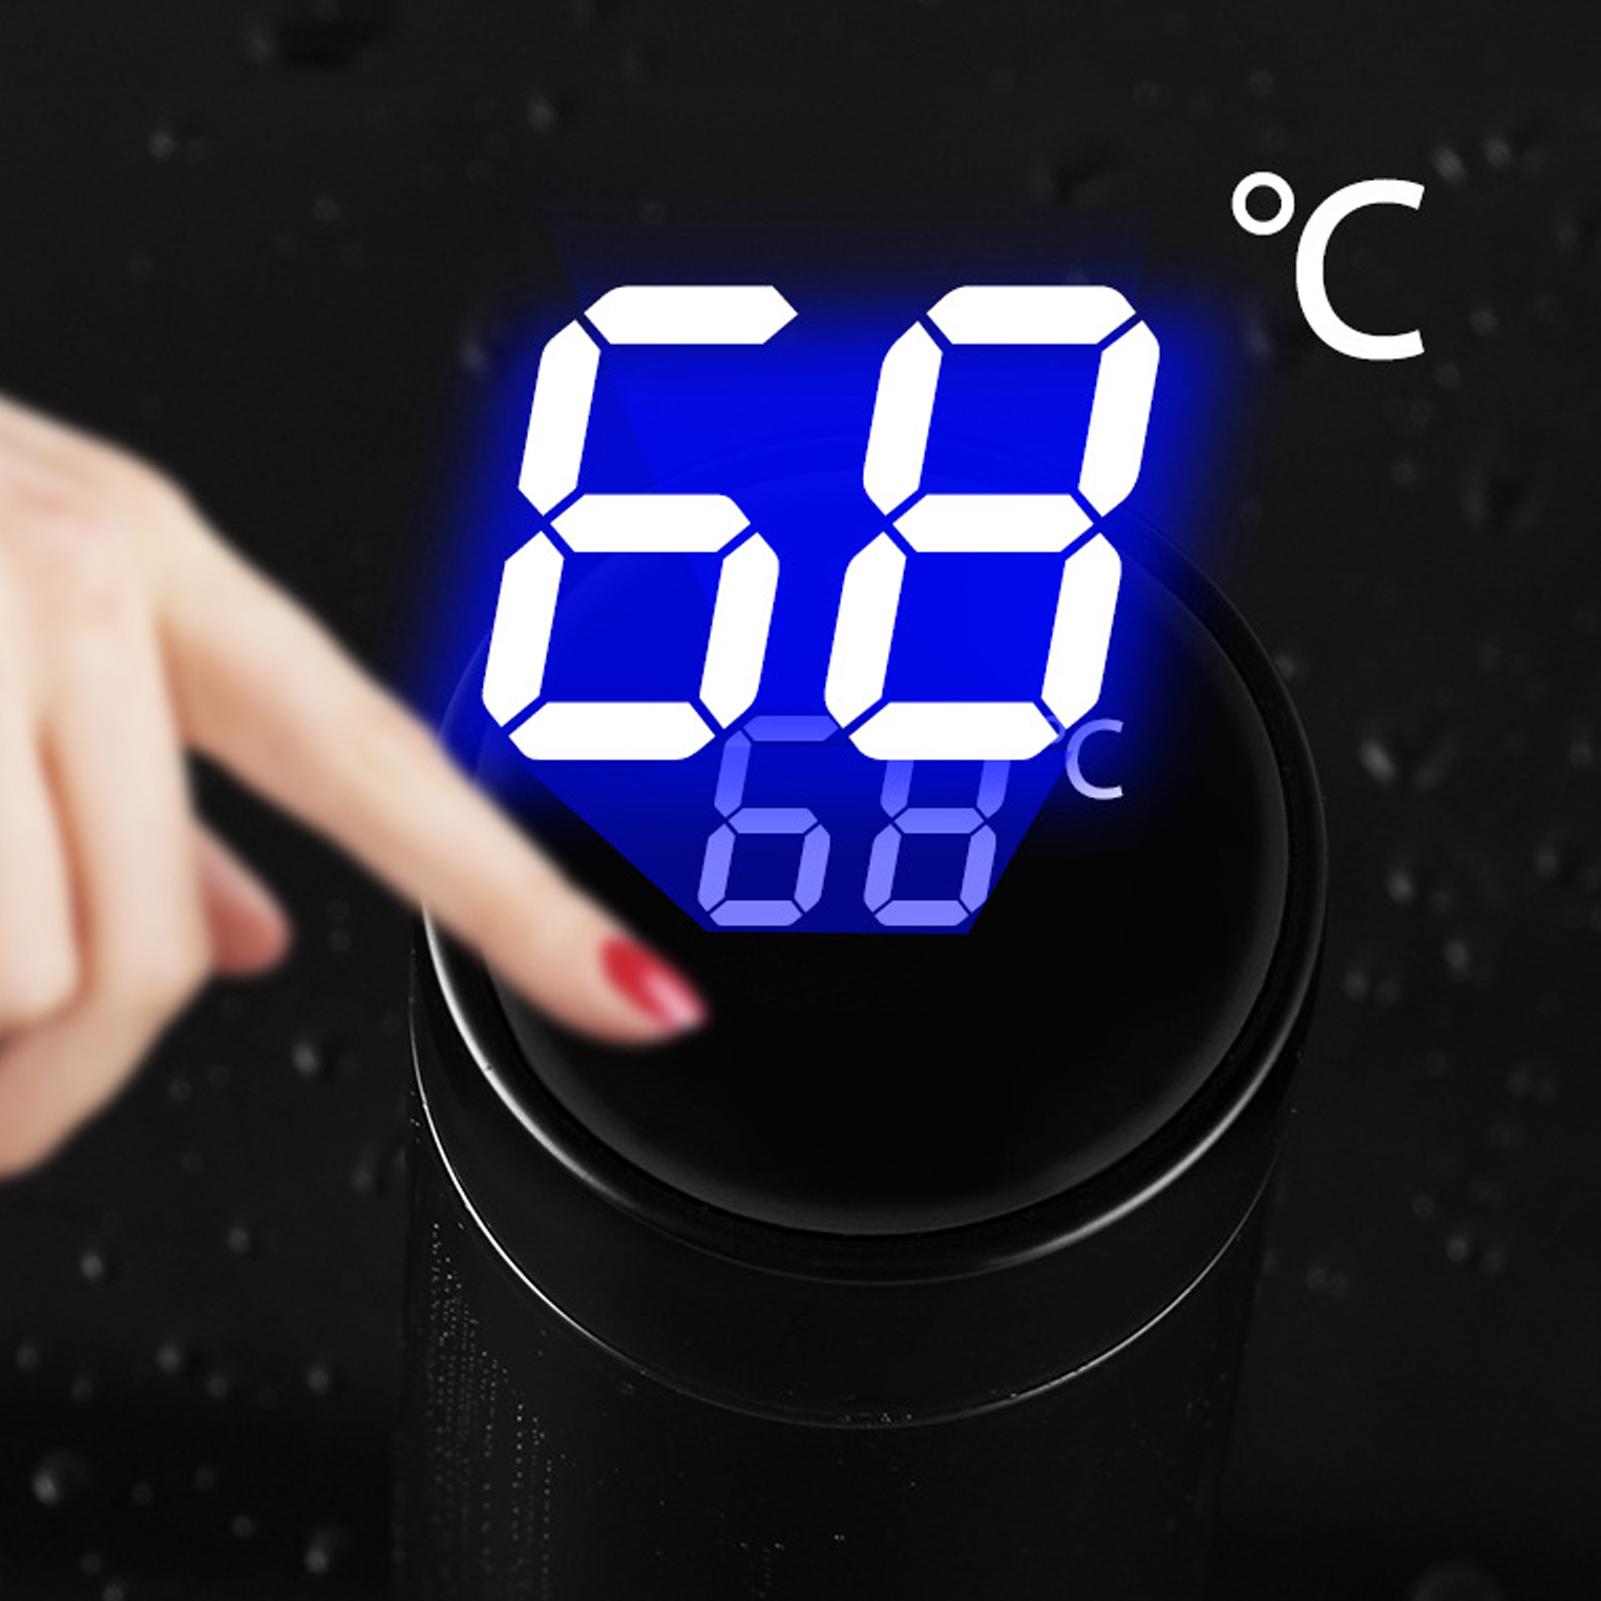 Bình giữ nhiệt bằng thép không gỉ, có màn hình LED hiển thị nhiệt độ